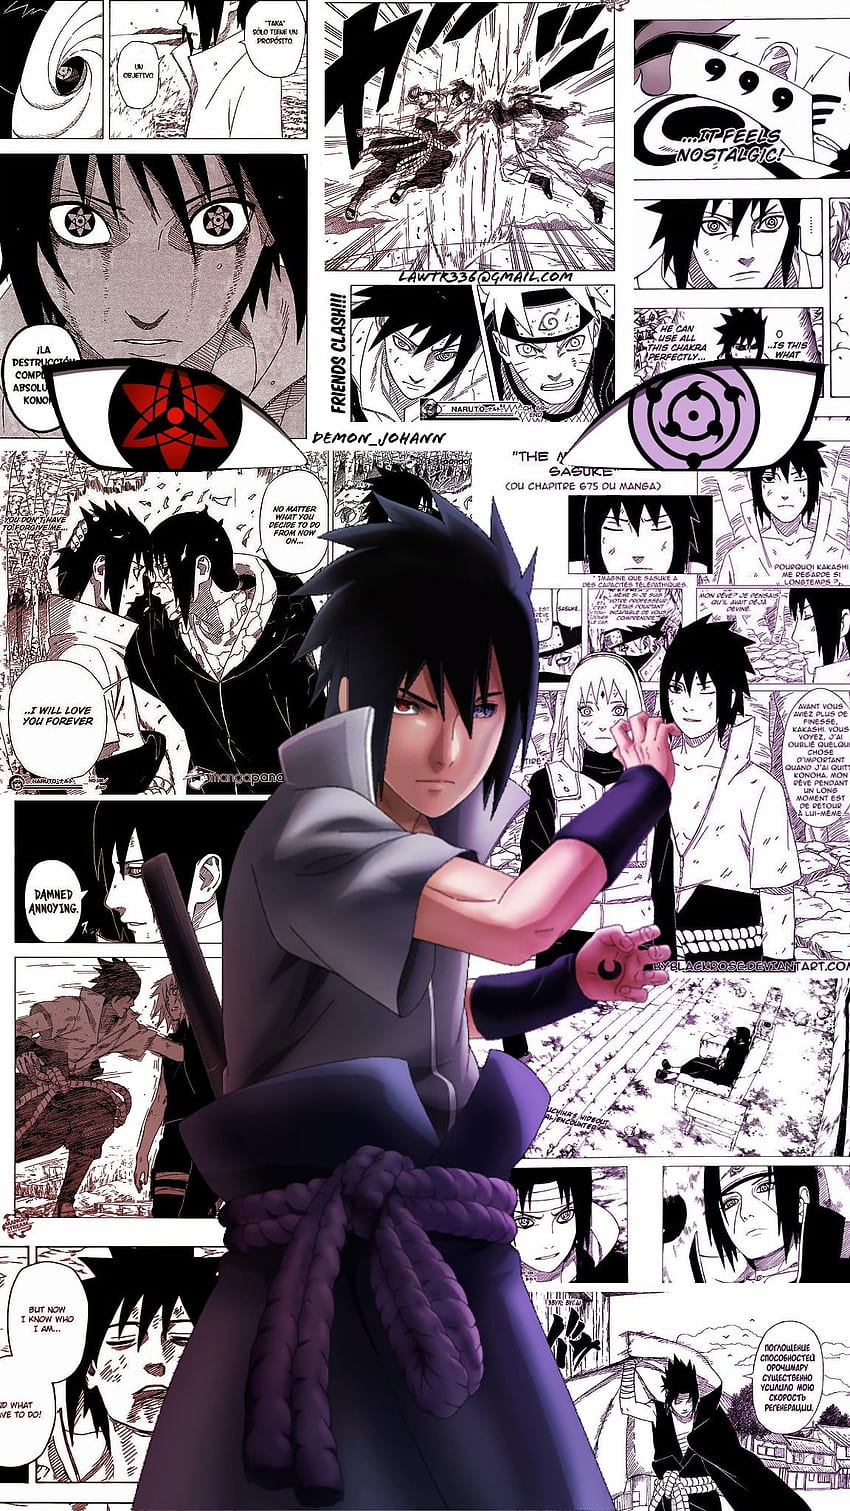 Sasuke uchiha. Sasuke uchiha, naruto shippuden, Sasuke uchiha sakura haruno, Sasuke Manga HD phone wallpaper